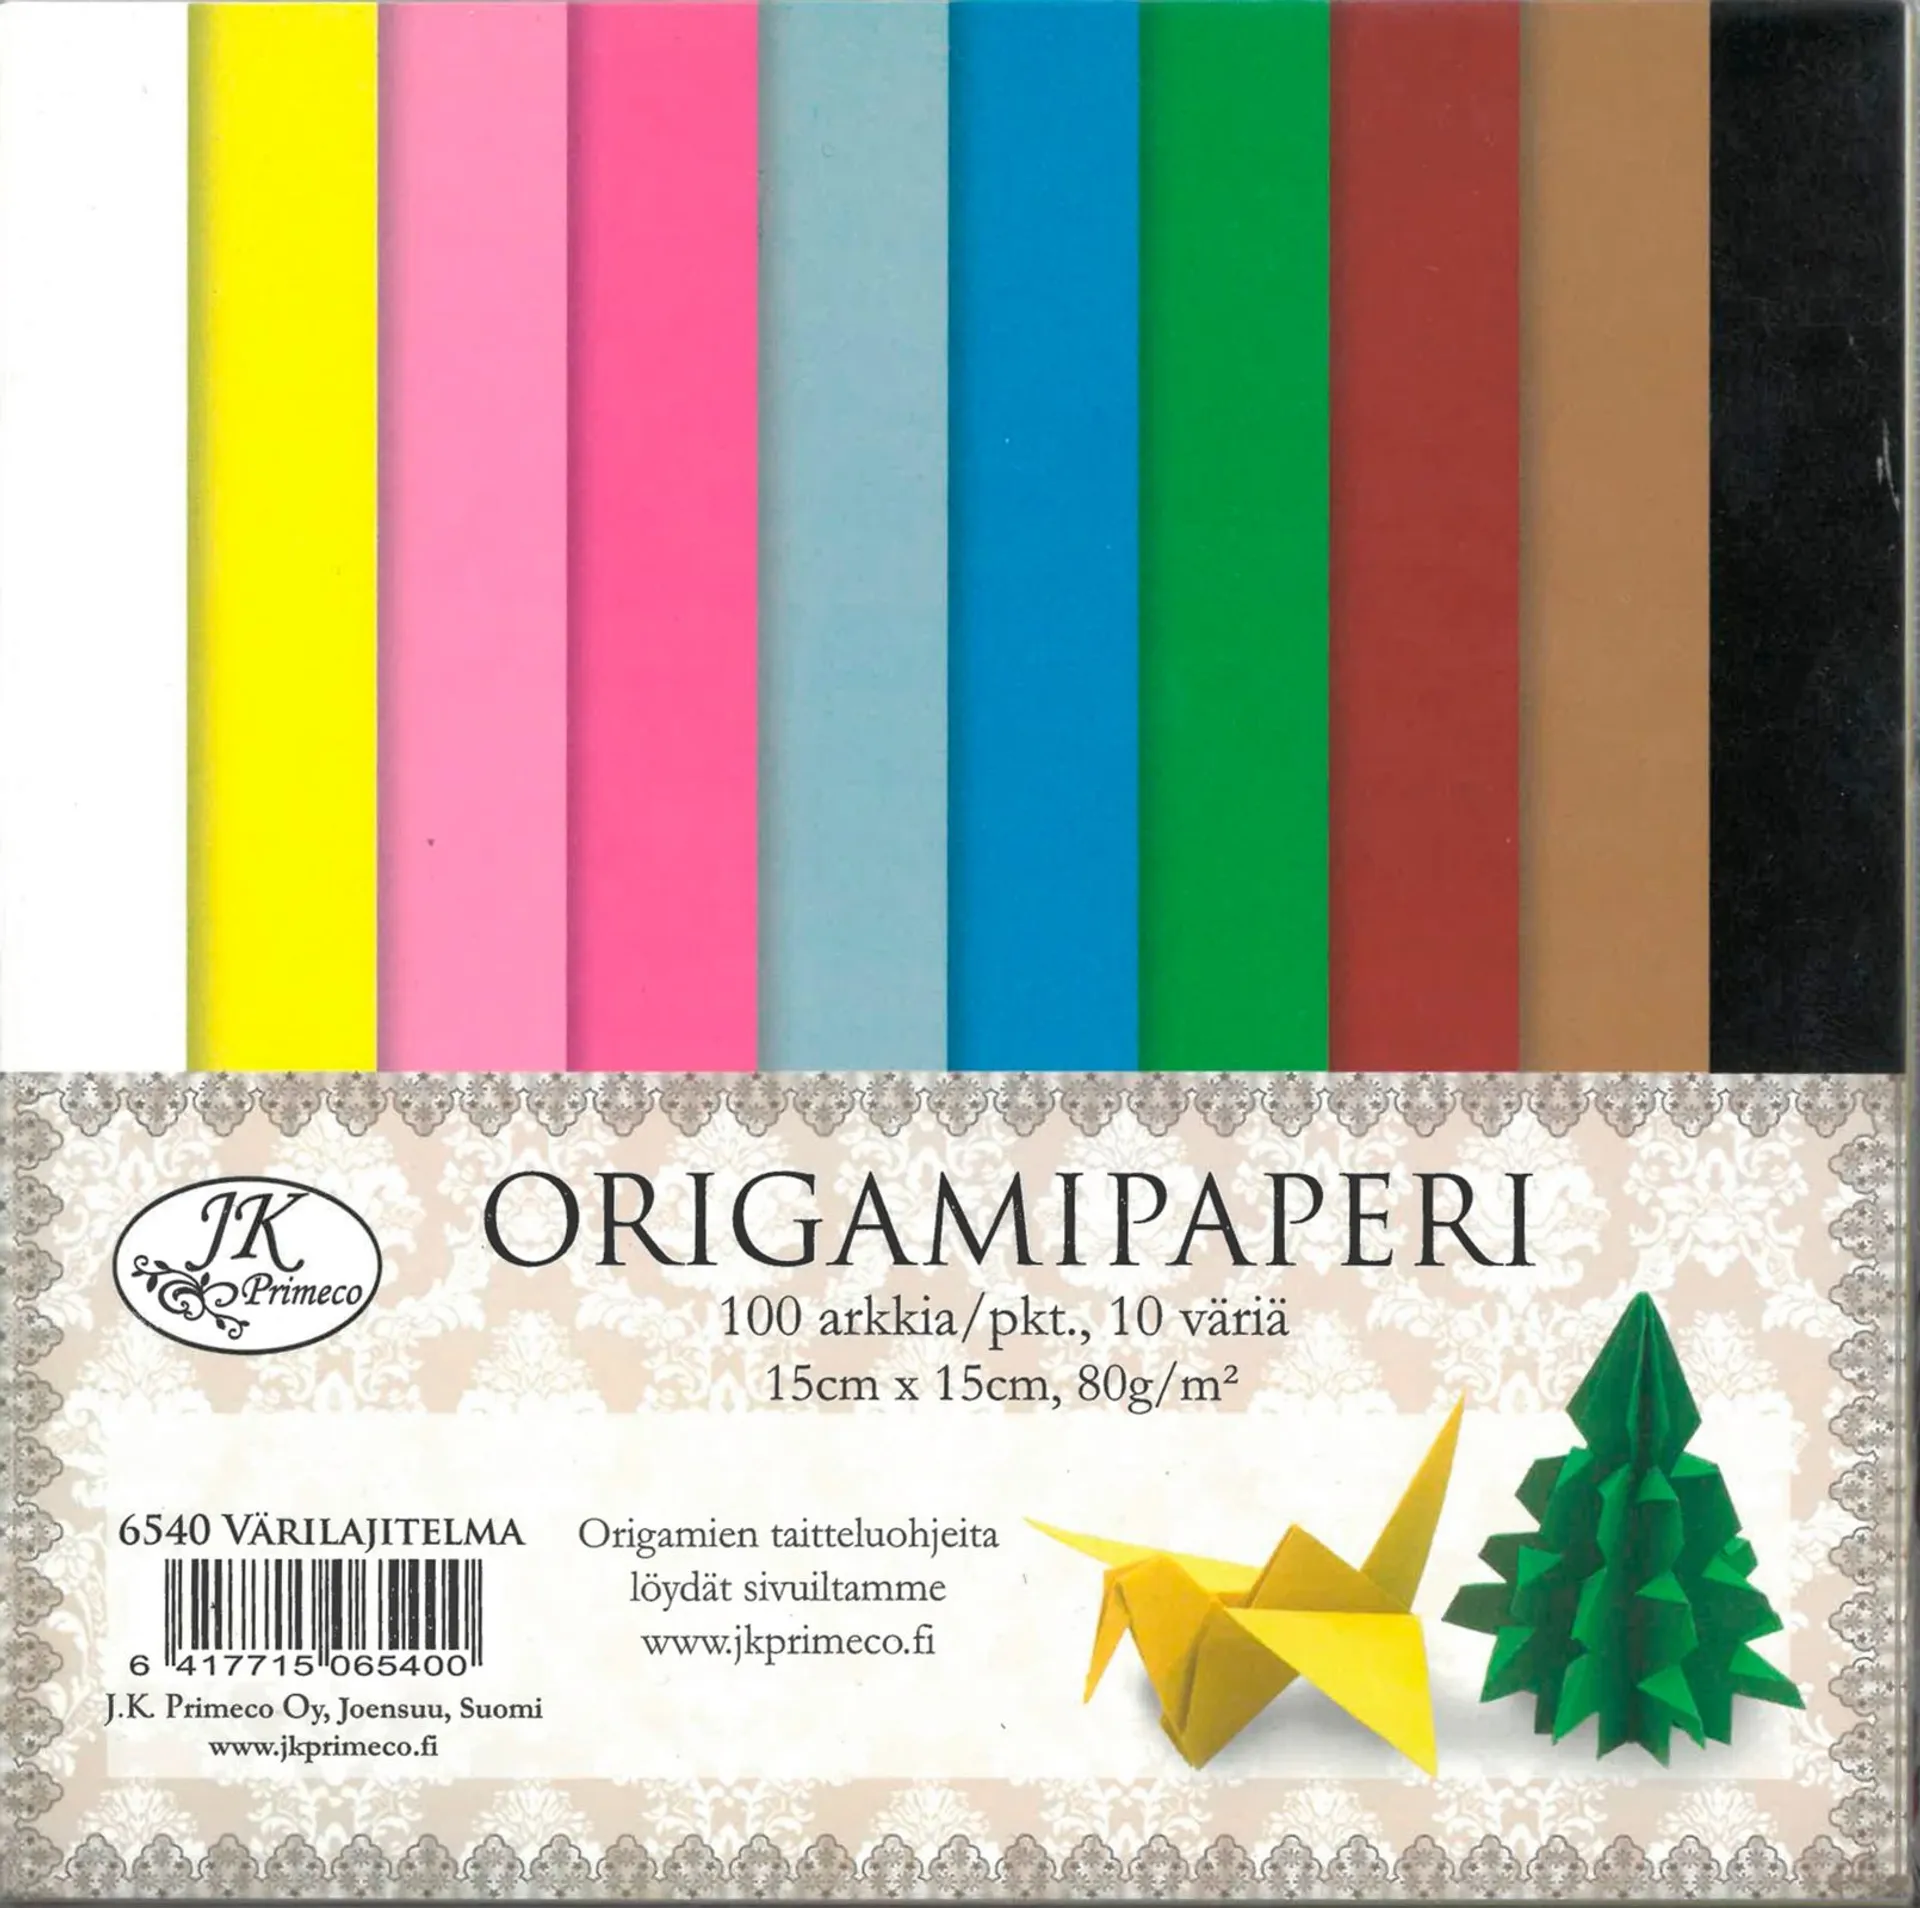 J.K. Primeco origamipaperi värilajitelma 100ark/pkt, 15 x 15cm